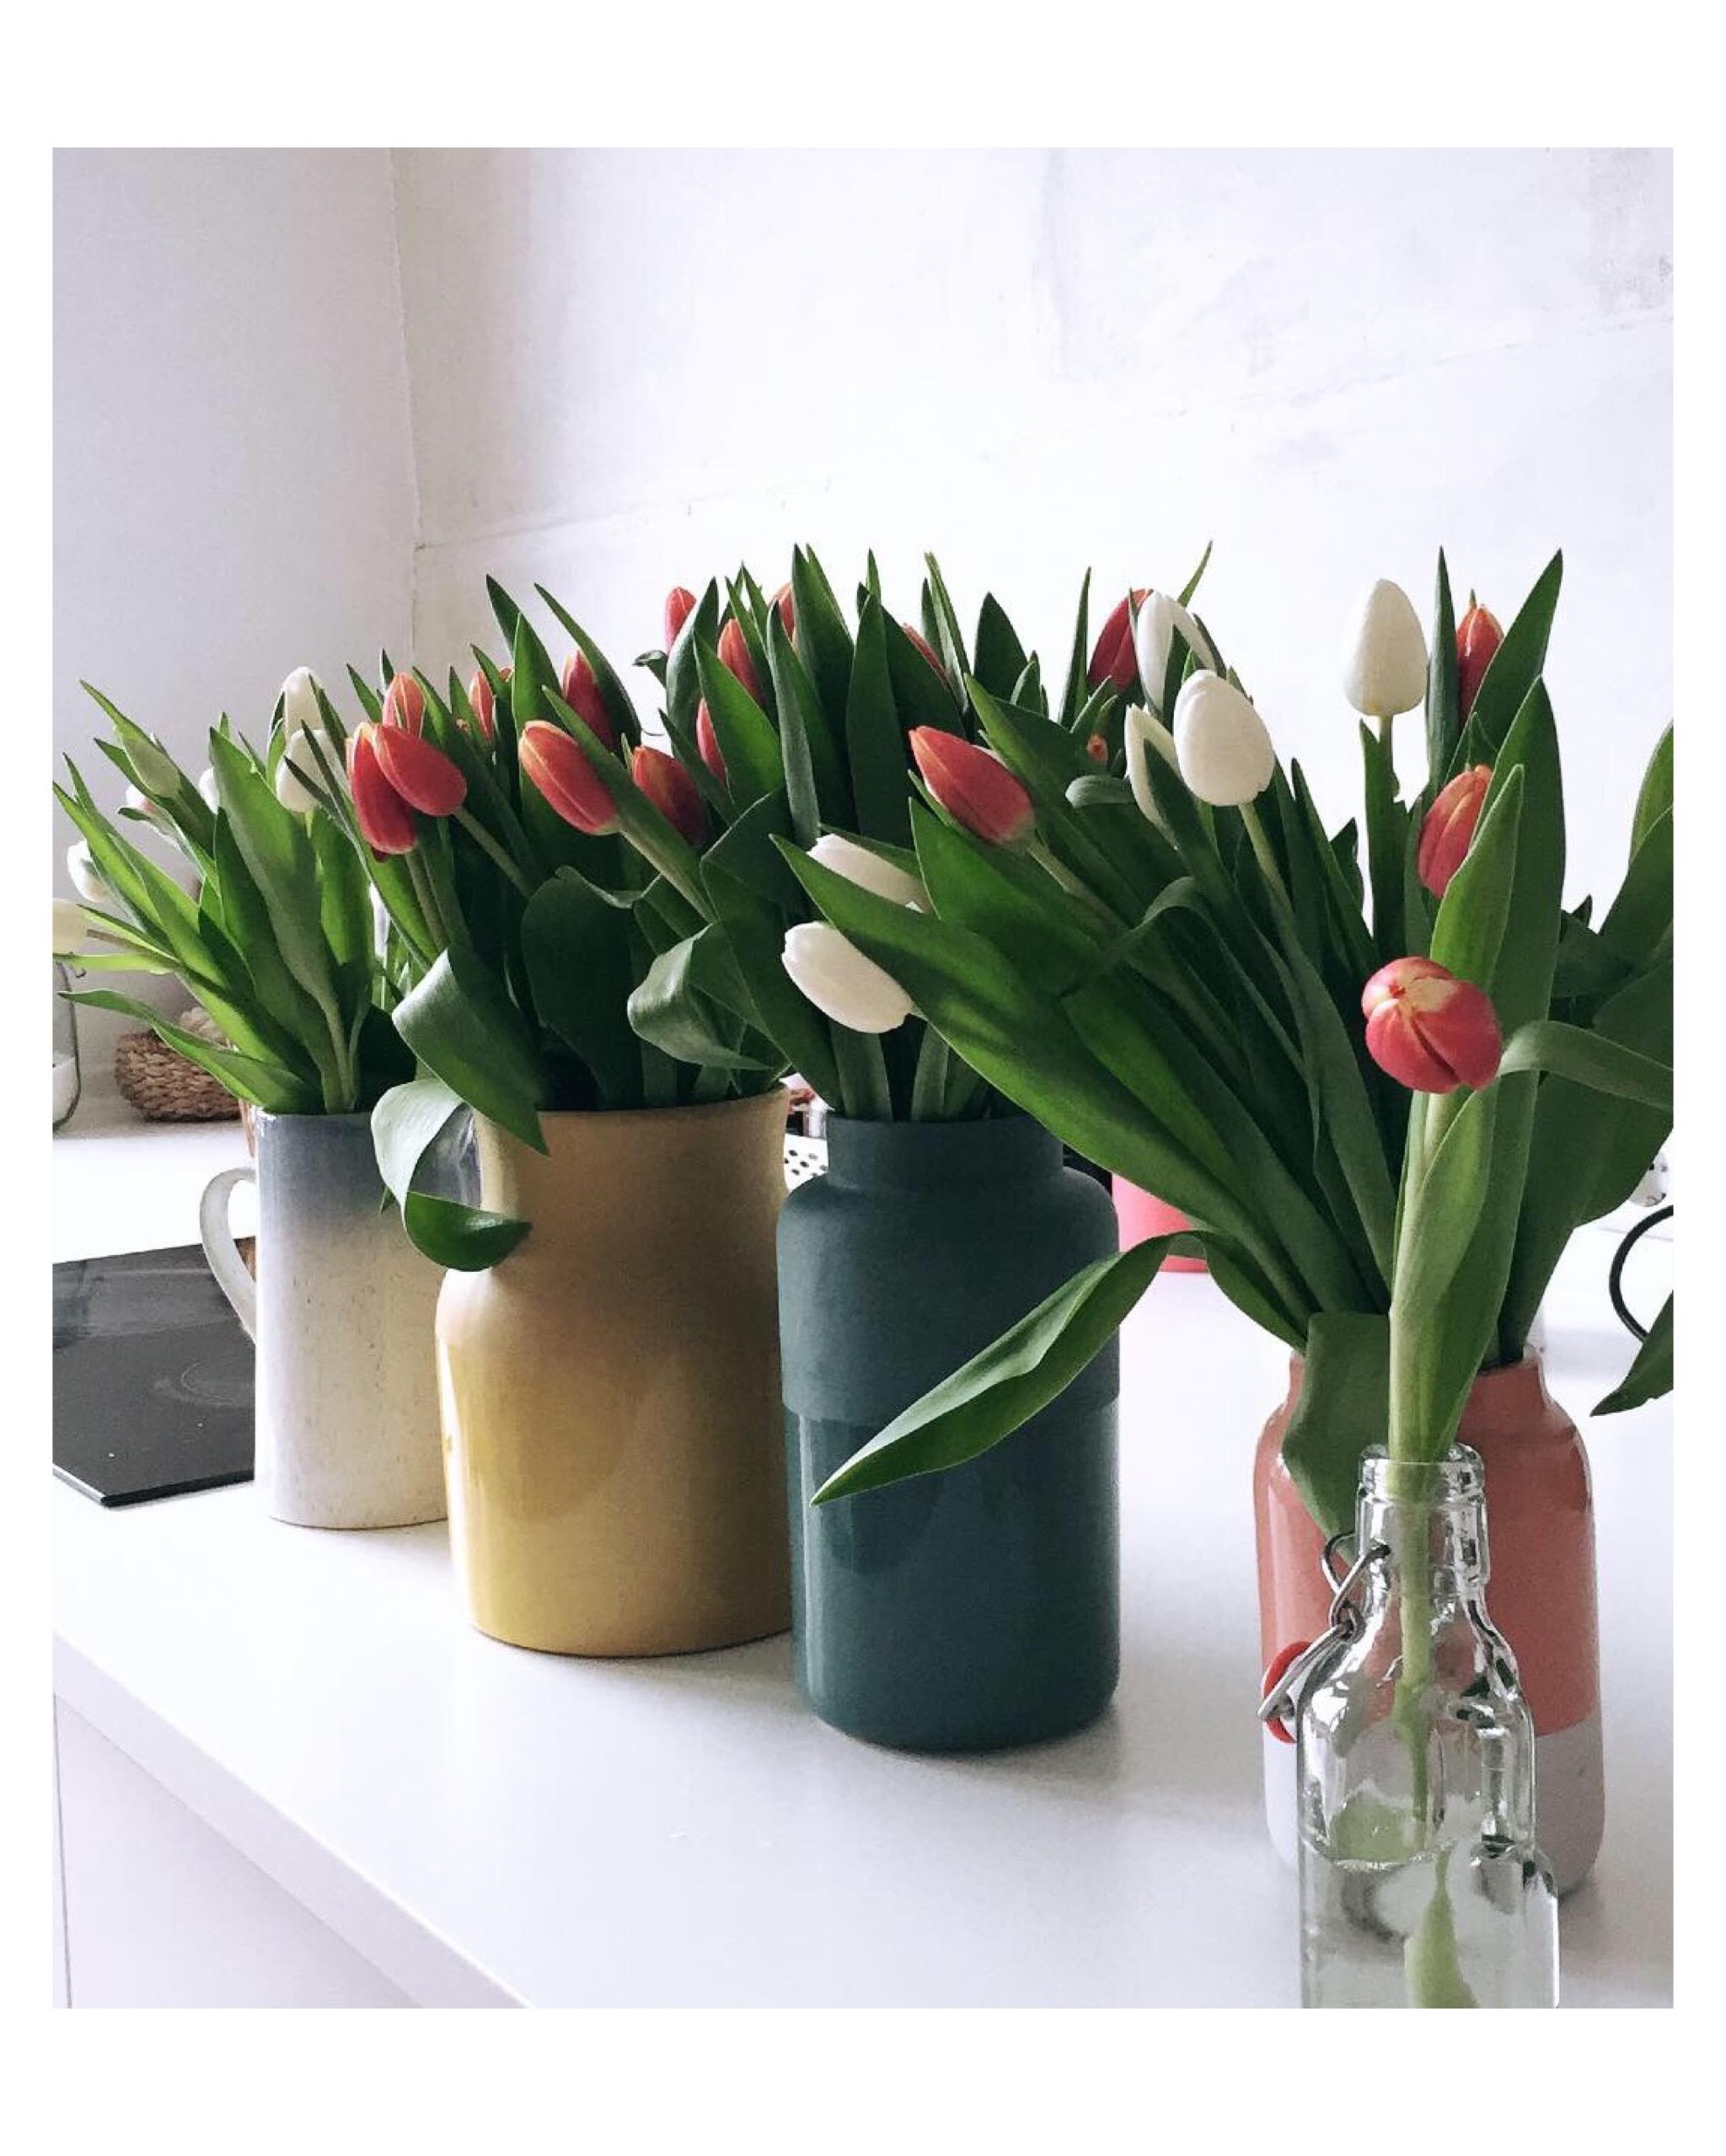 Tulpen//Vasen
#sommer #interiordesign #vasen #hamburg #markt #kleineküche #kleinerraum #colour